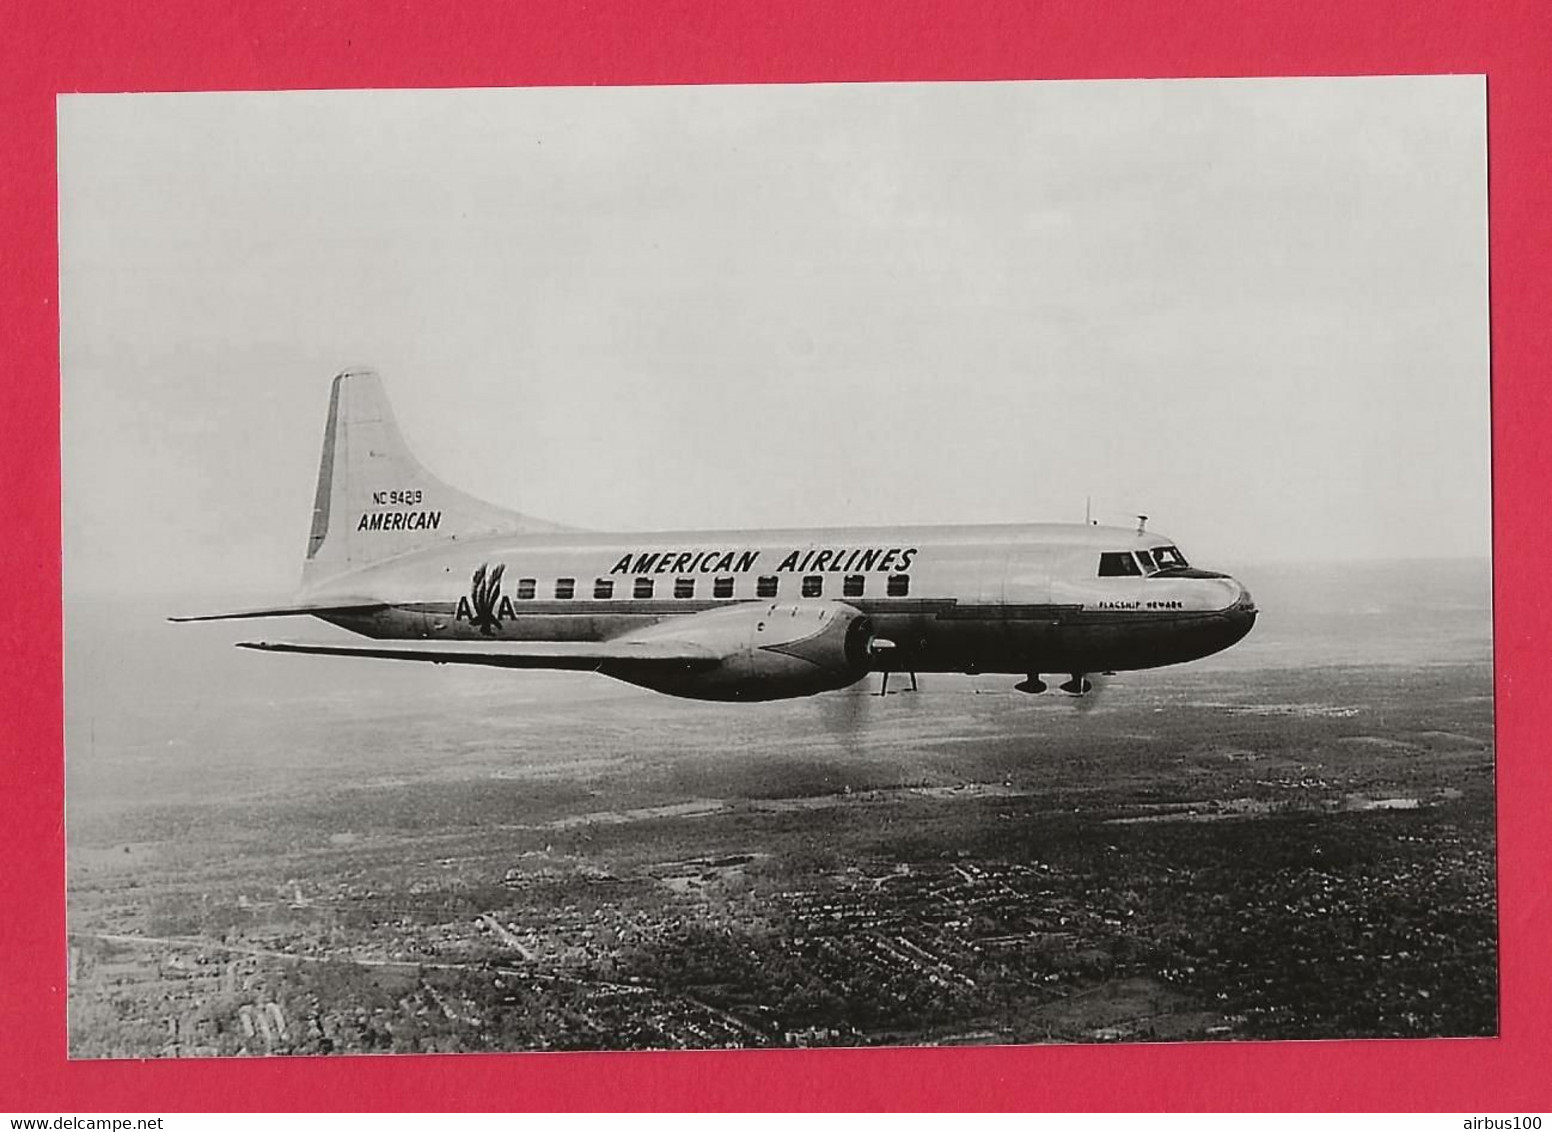 BELLE PHOTO REPRODUCTION AVION PLANE FLUGZEUG - DOUGLAS AMERICAN AIRLINES EN VOL - Luftfahrt